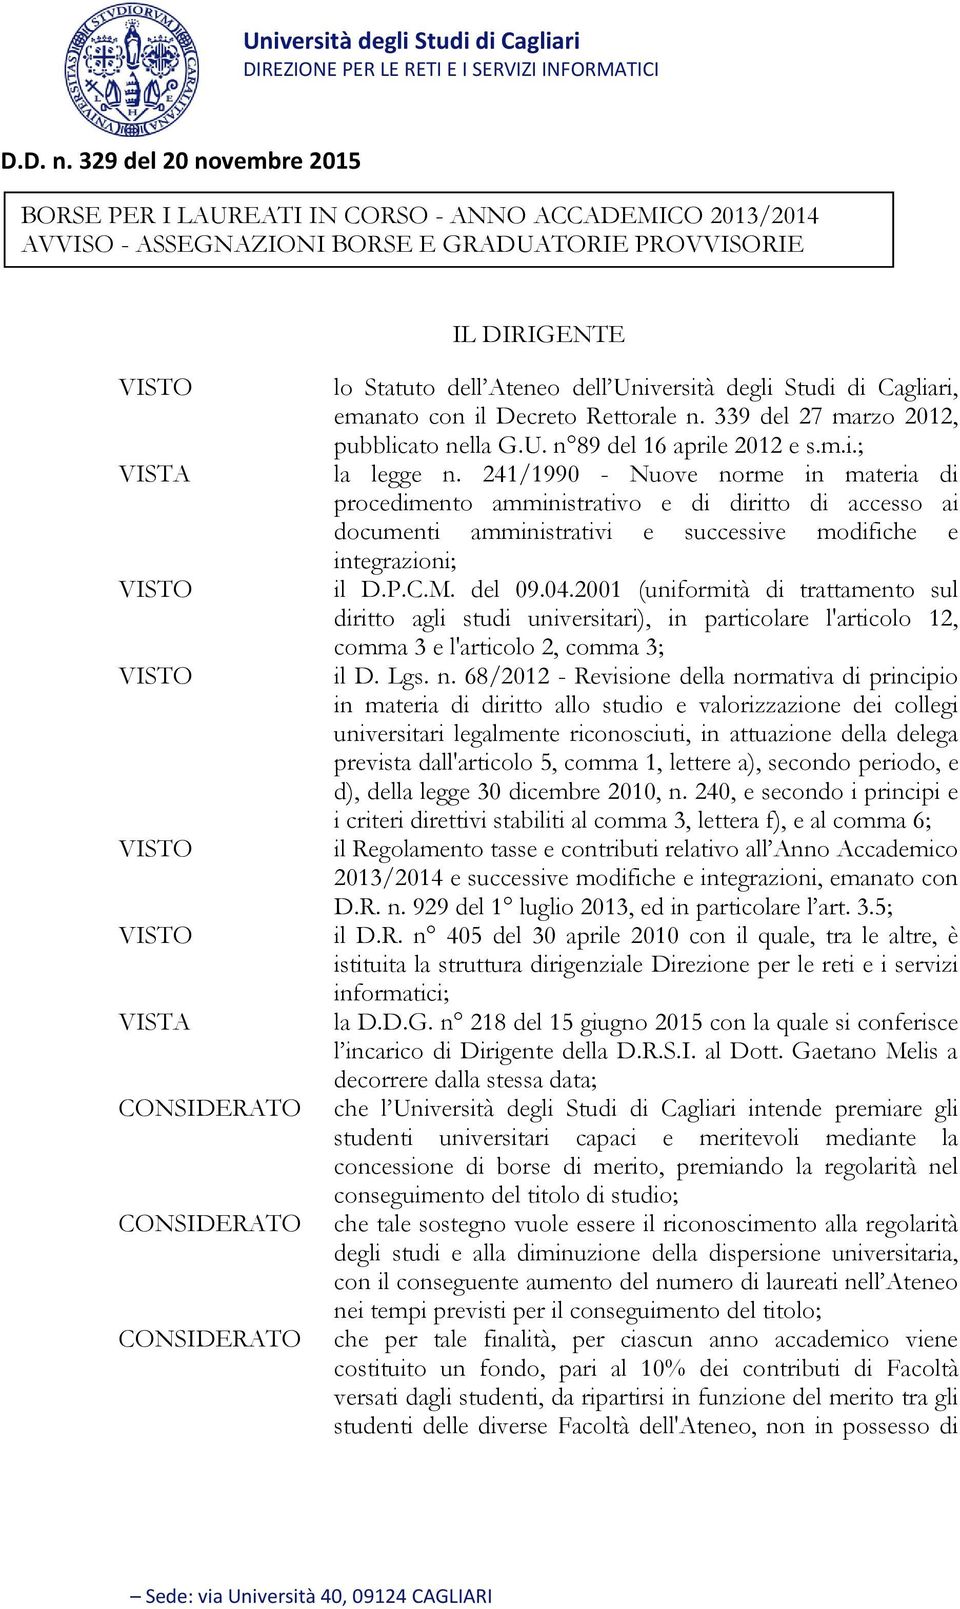 Studi di Cagliari, emanato con il Decreto Rettorale n. 339 del 27 marzo 2012, pubblicato nella G.U. n 89 del 16 aprile 2012 e s.m.i.; la legge n.